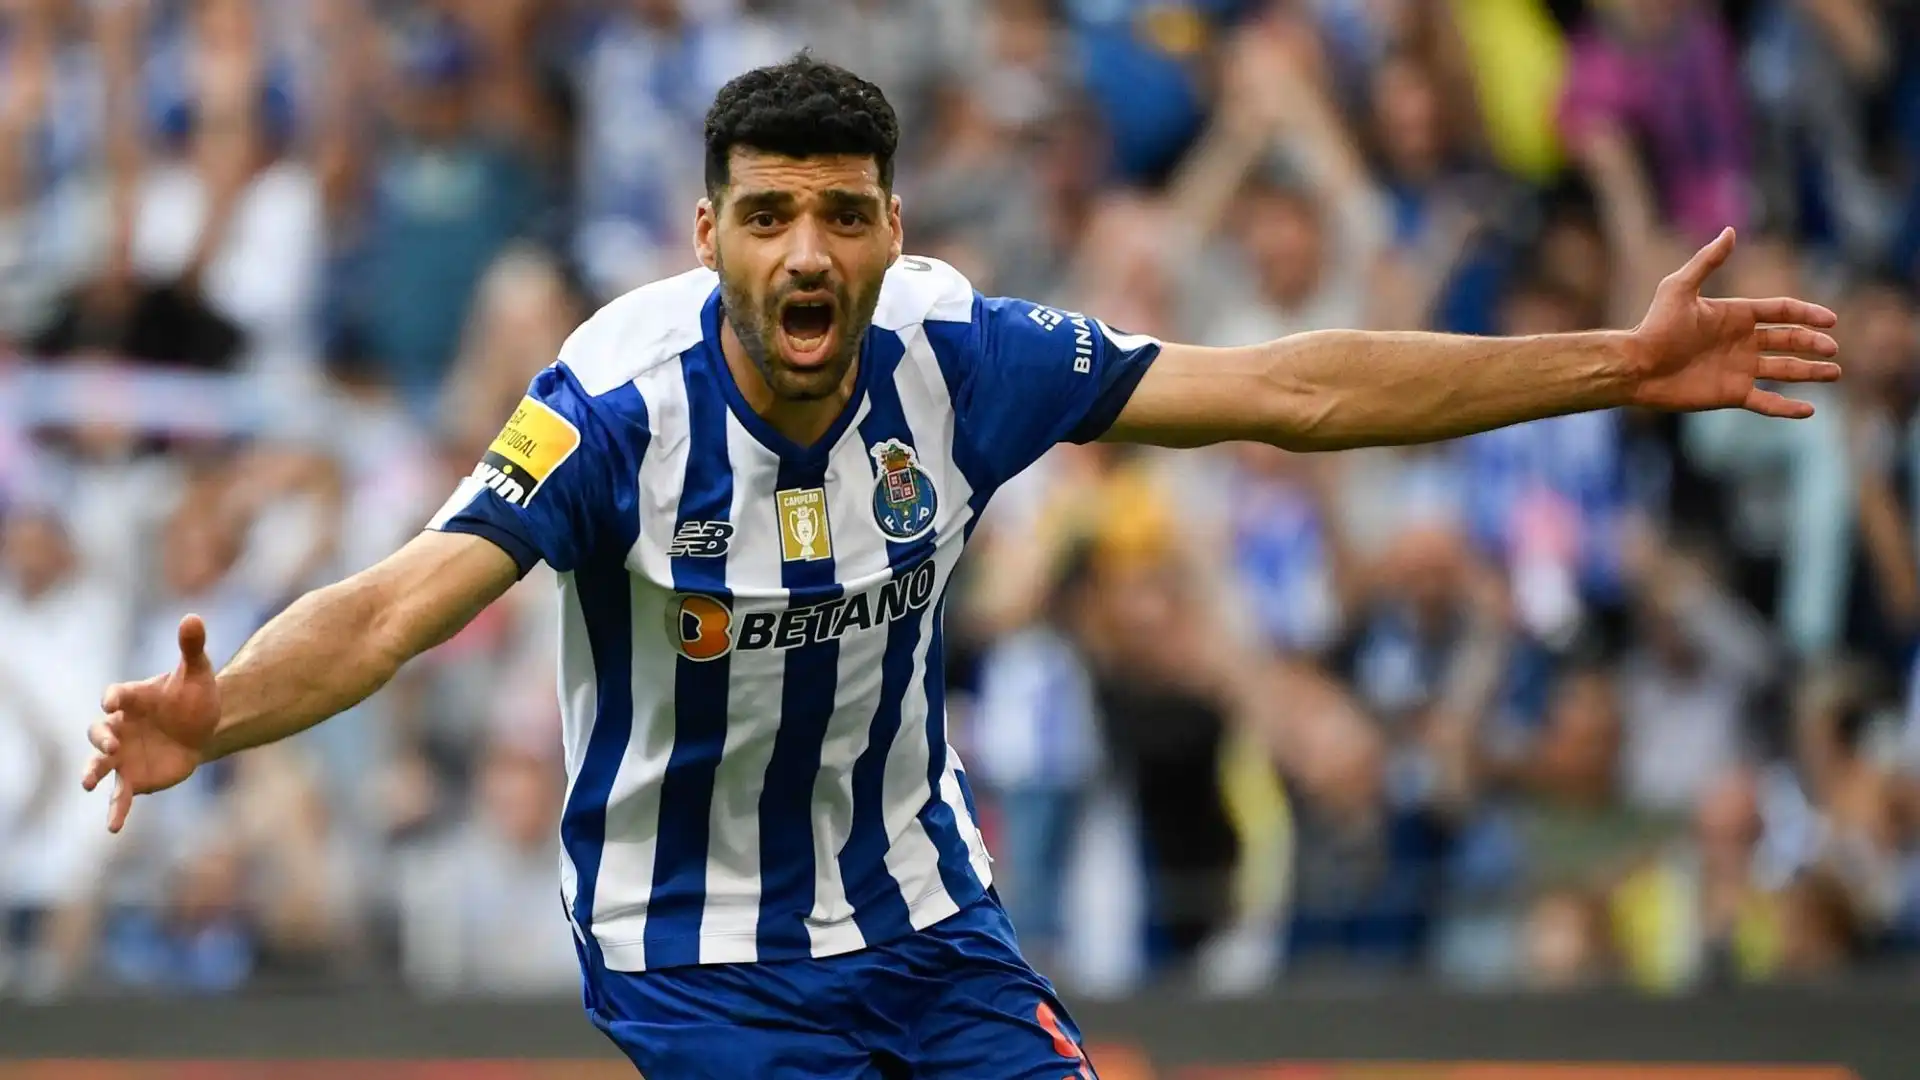 Mehdi Taremi: bomber affermato da 80 gol in 147 partite con il Porto,  l'iraniano è seguito dal Manchester United e da club sauditi. Il contratto in scadenza nel 2024 potrebbe renderlo appetibile anche al Milan, che non ha intenzione di spendere più di 25 milioni